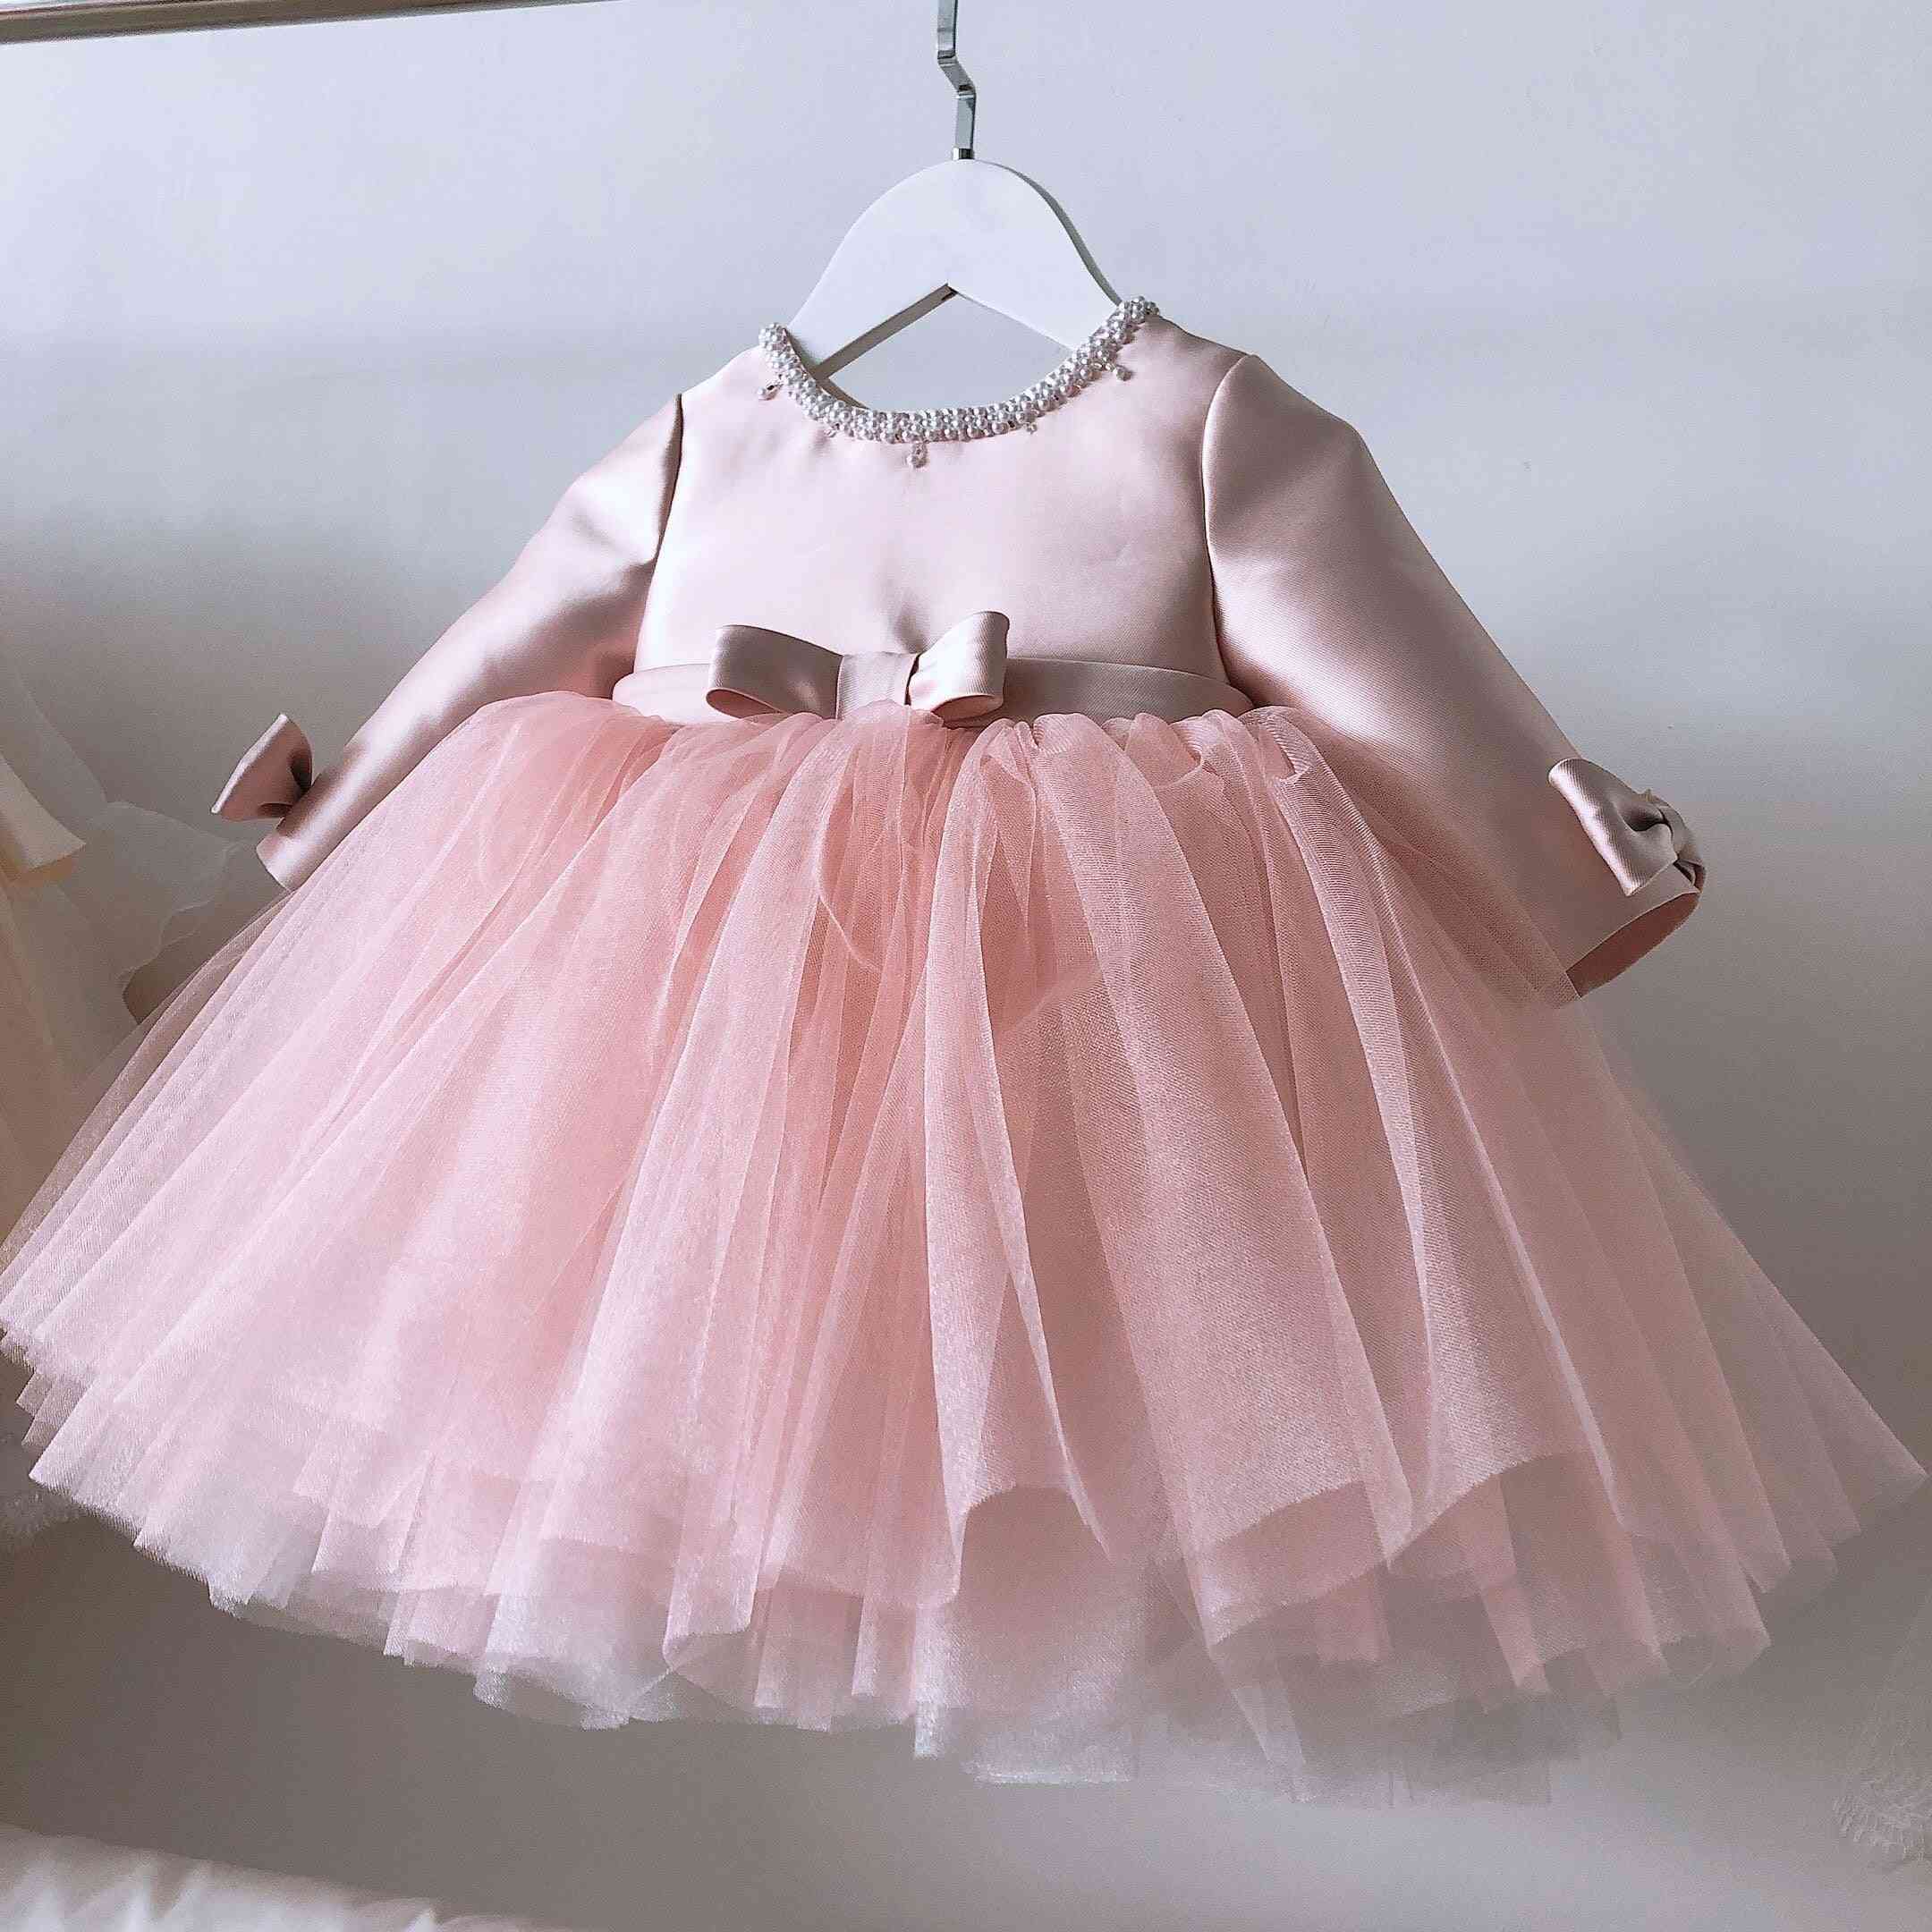 Růžové krajkové šaty pro holčičku, svatební oblečení k narozeninám